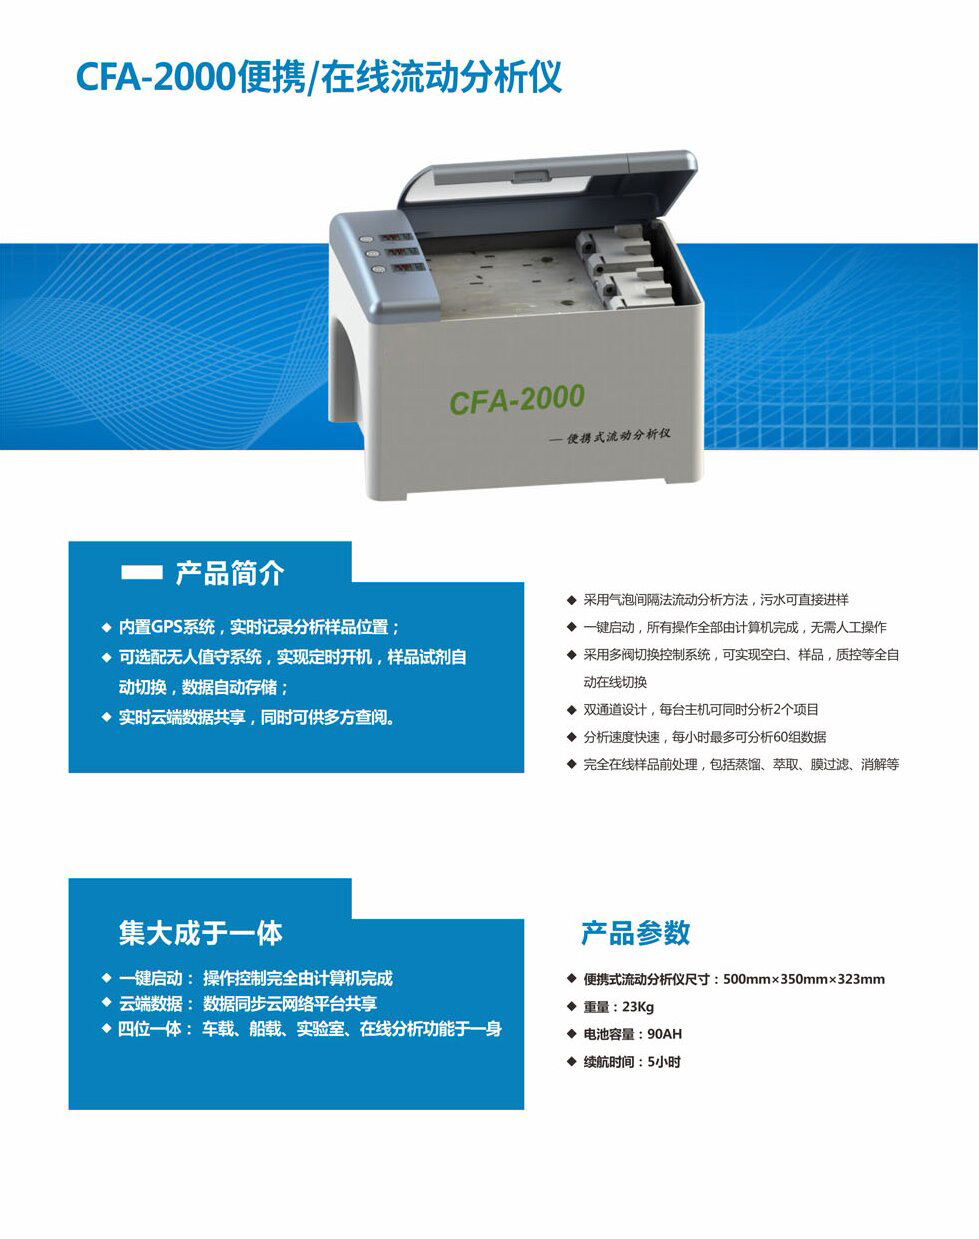 CFA-2000便携式连续流动分析仪